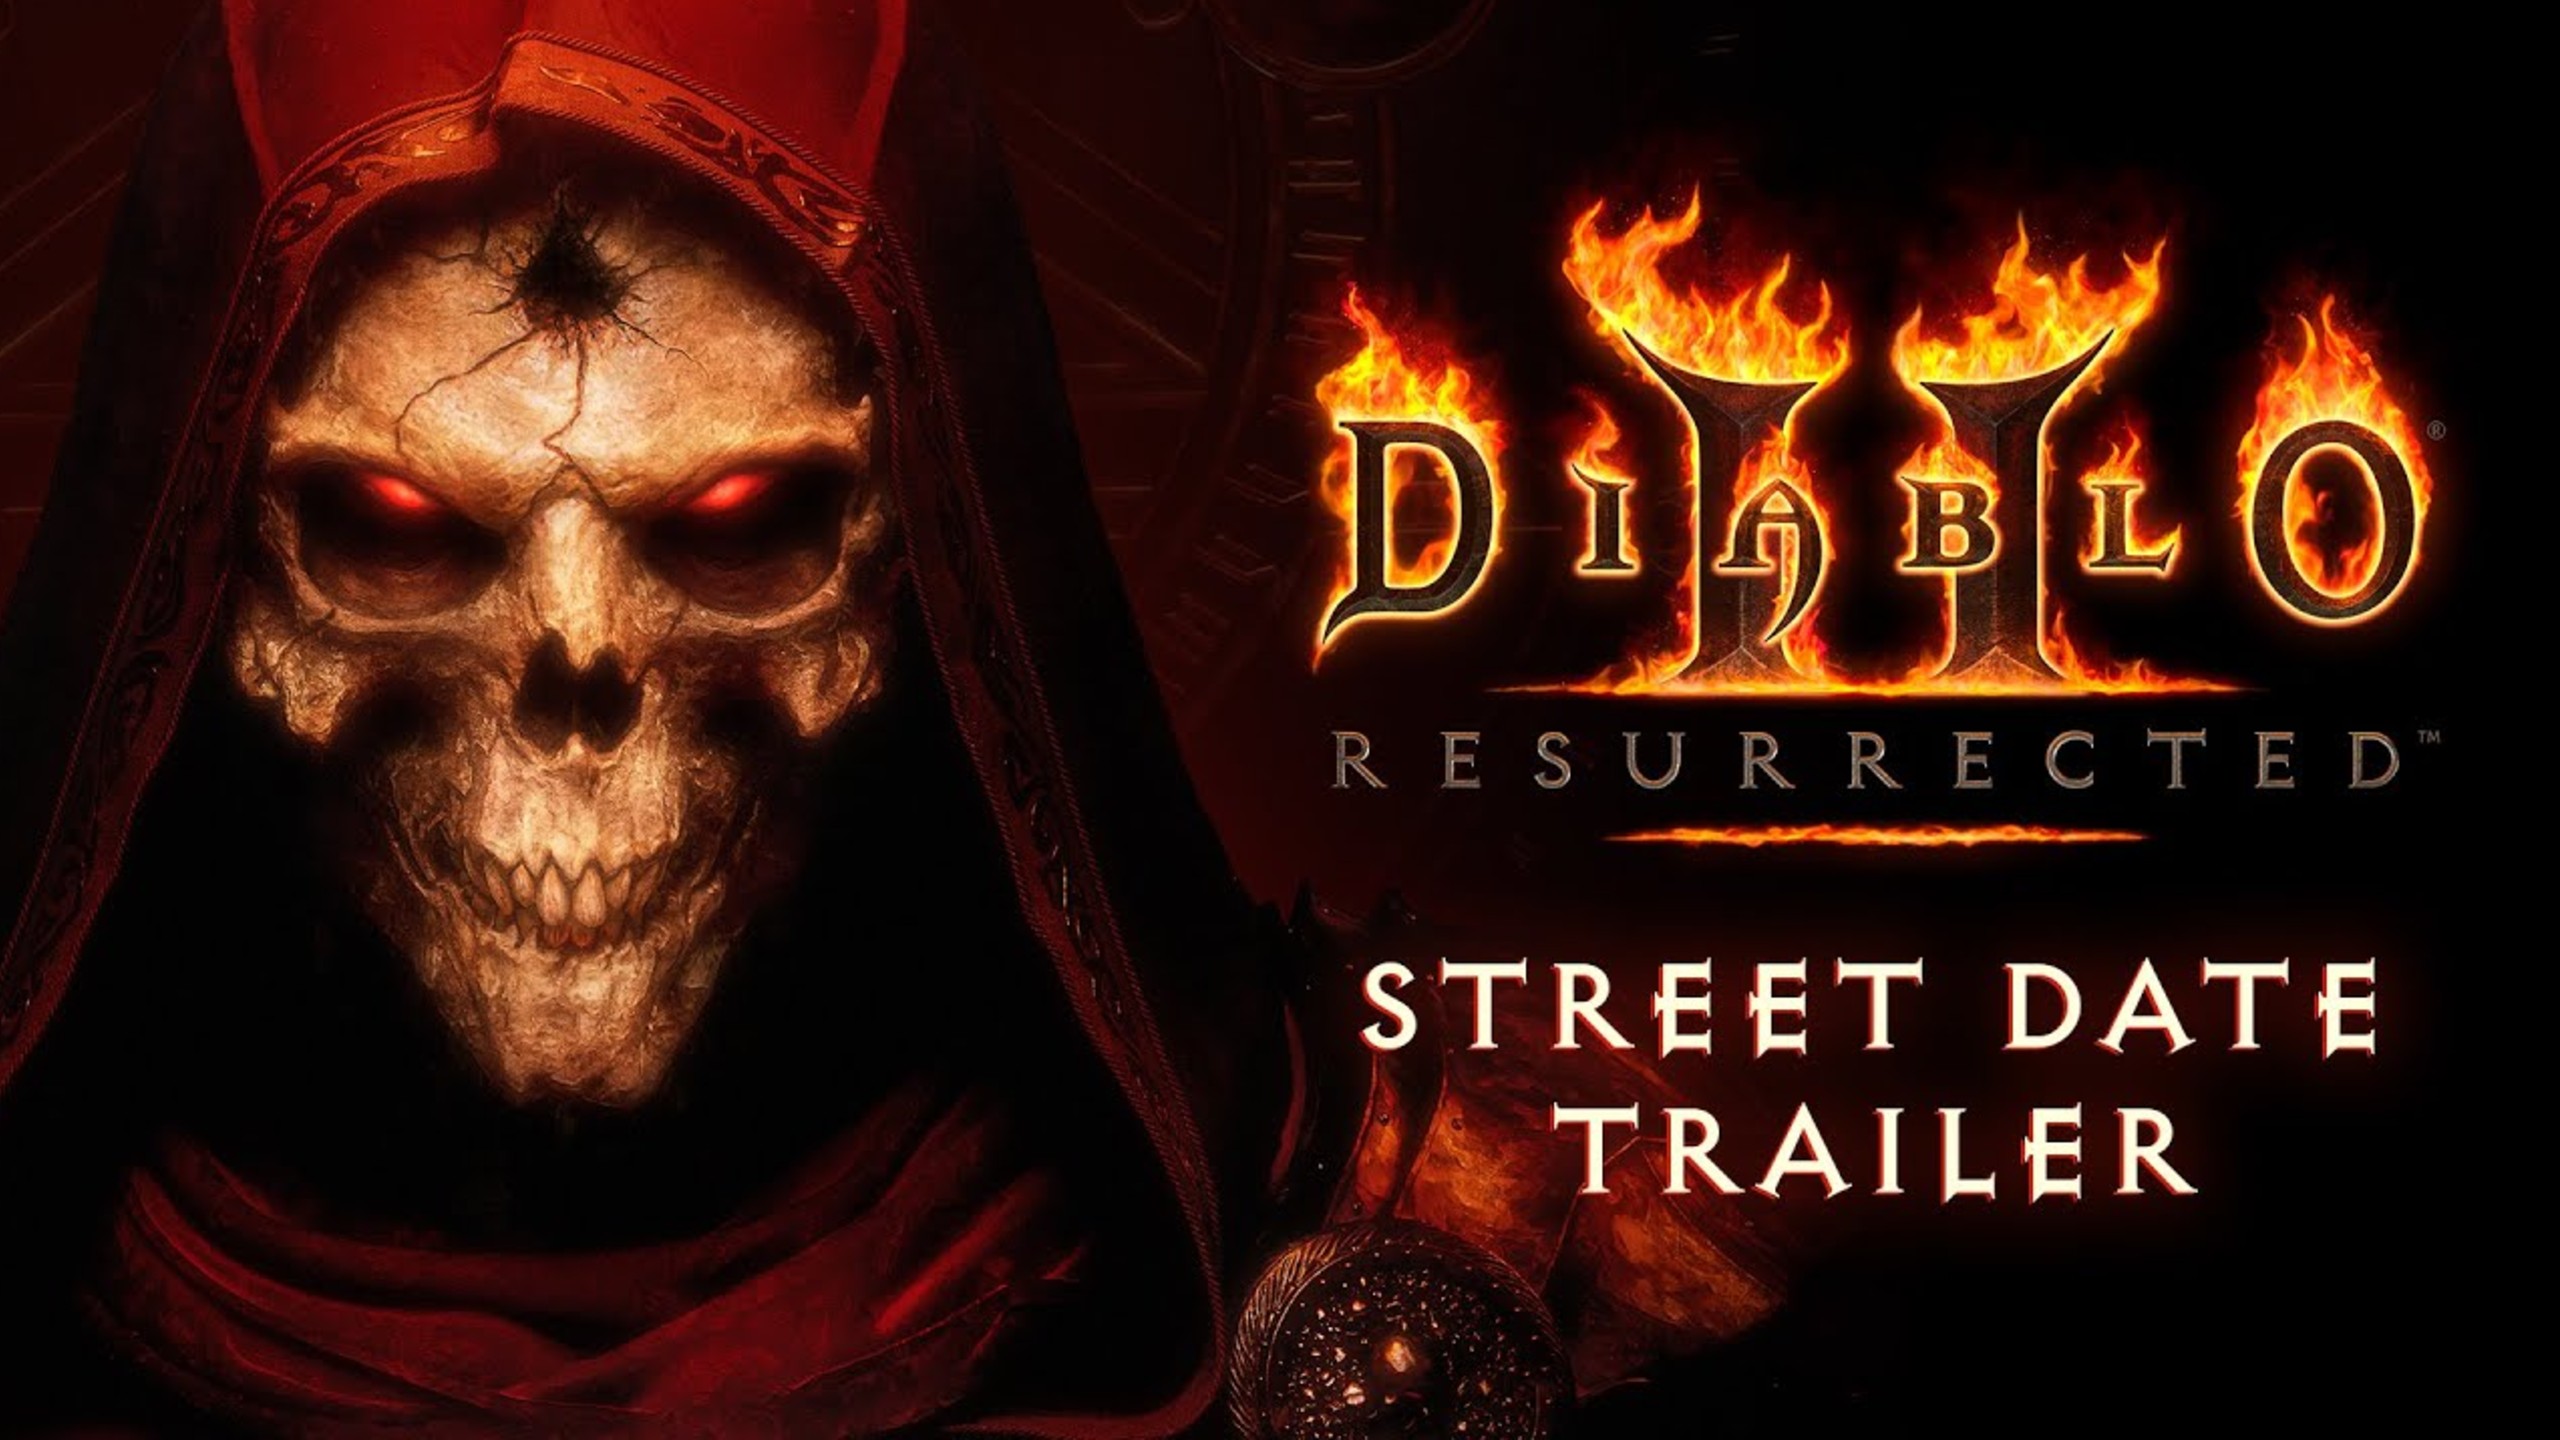 Diablo 2 Release Date Trailer